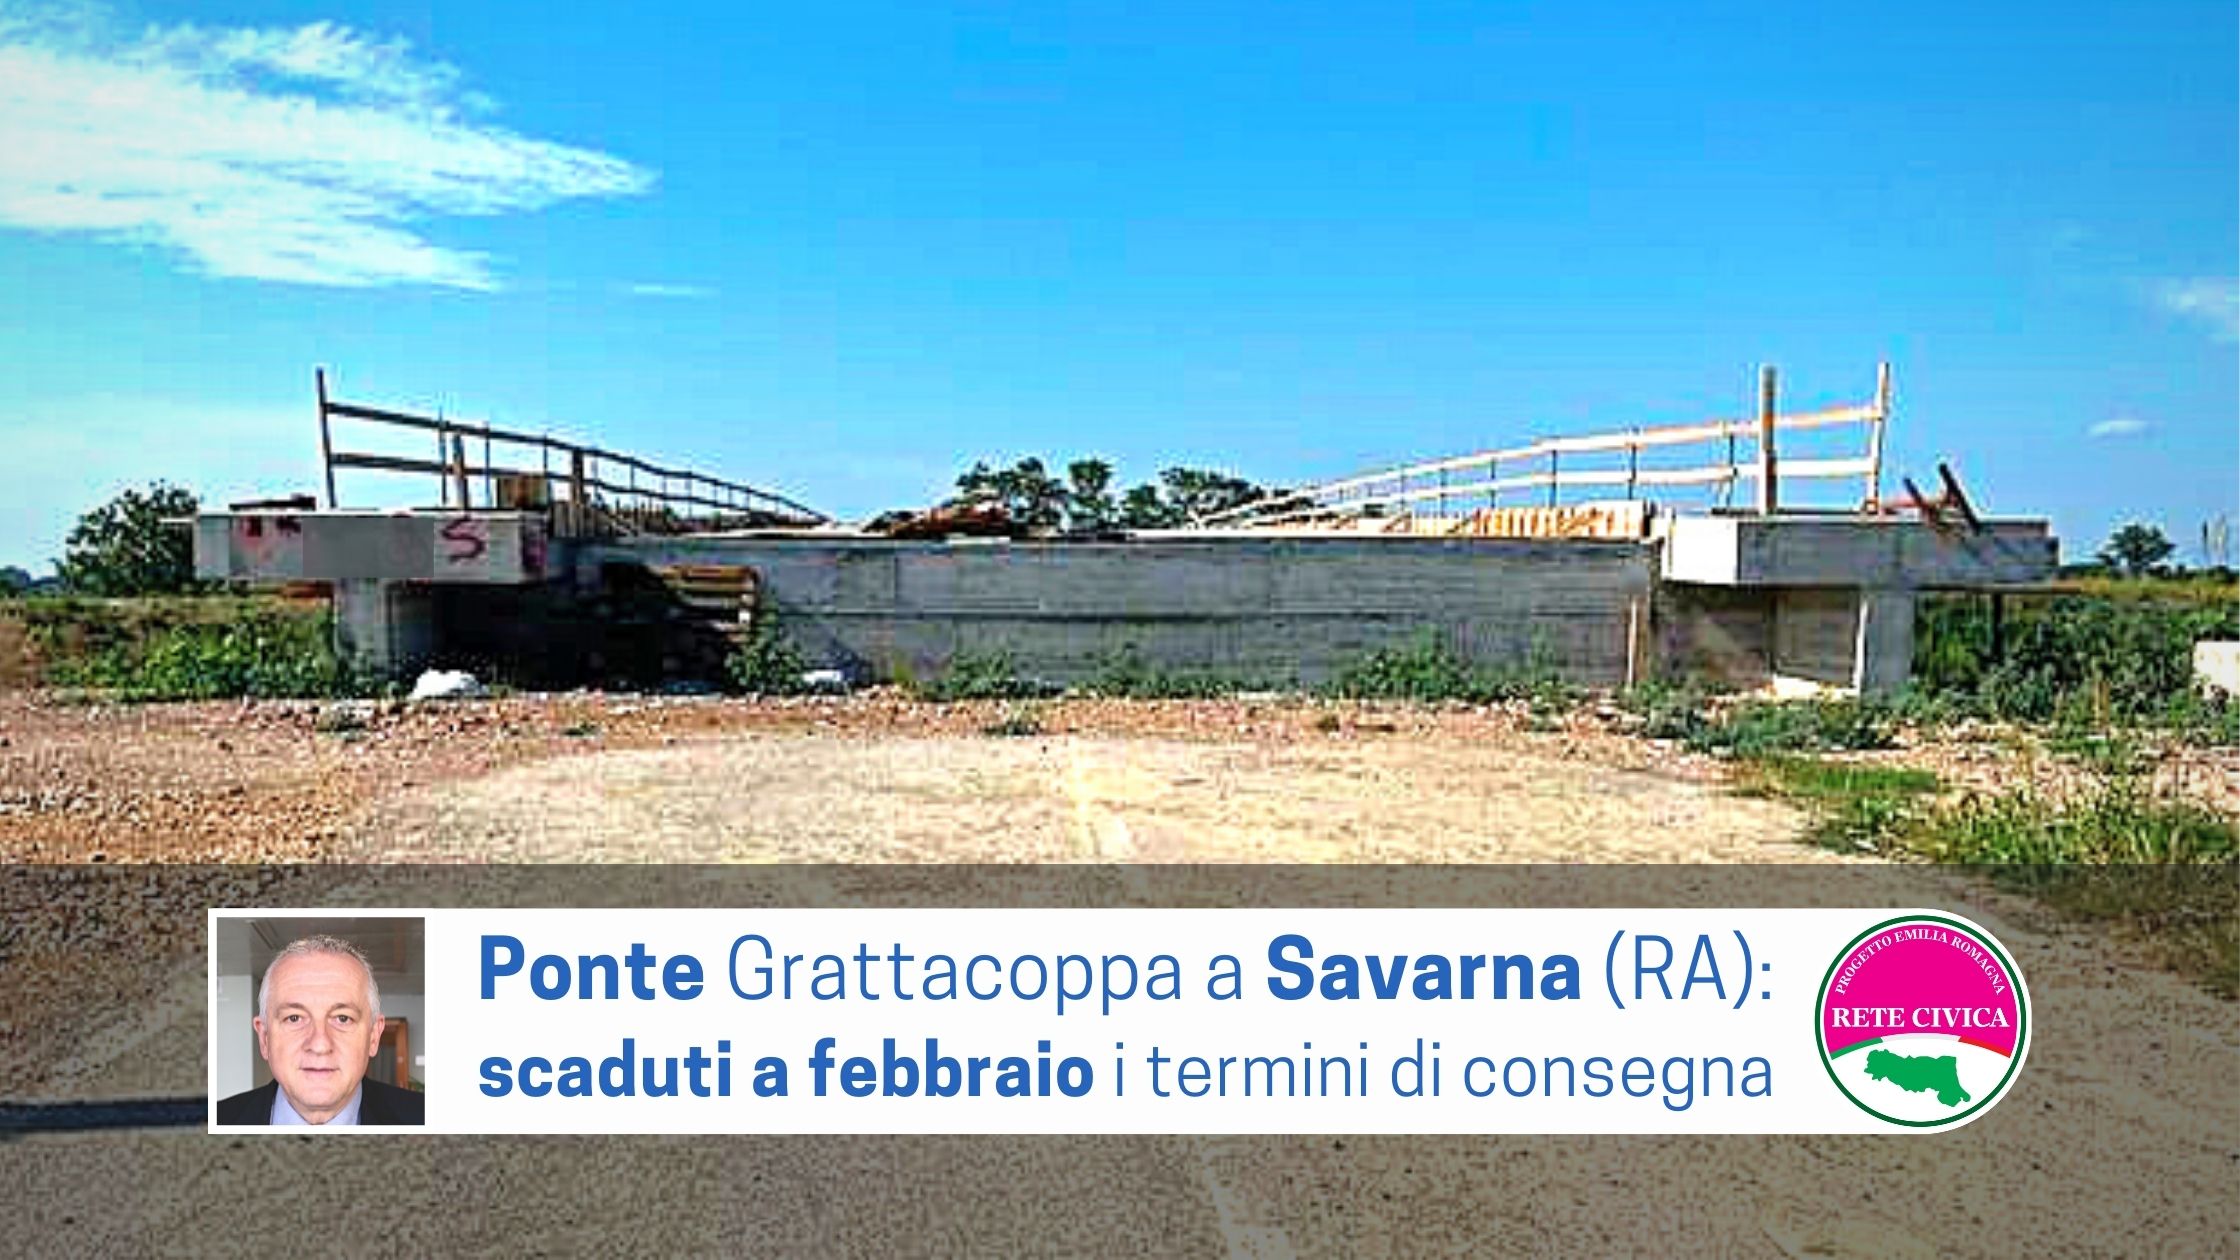 Al momento stai visualizzando PONTE GRATTACOPPA a SAVARNA (RA): scaduti a febbraio i termini di consegna del manufatto 